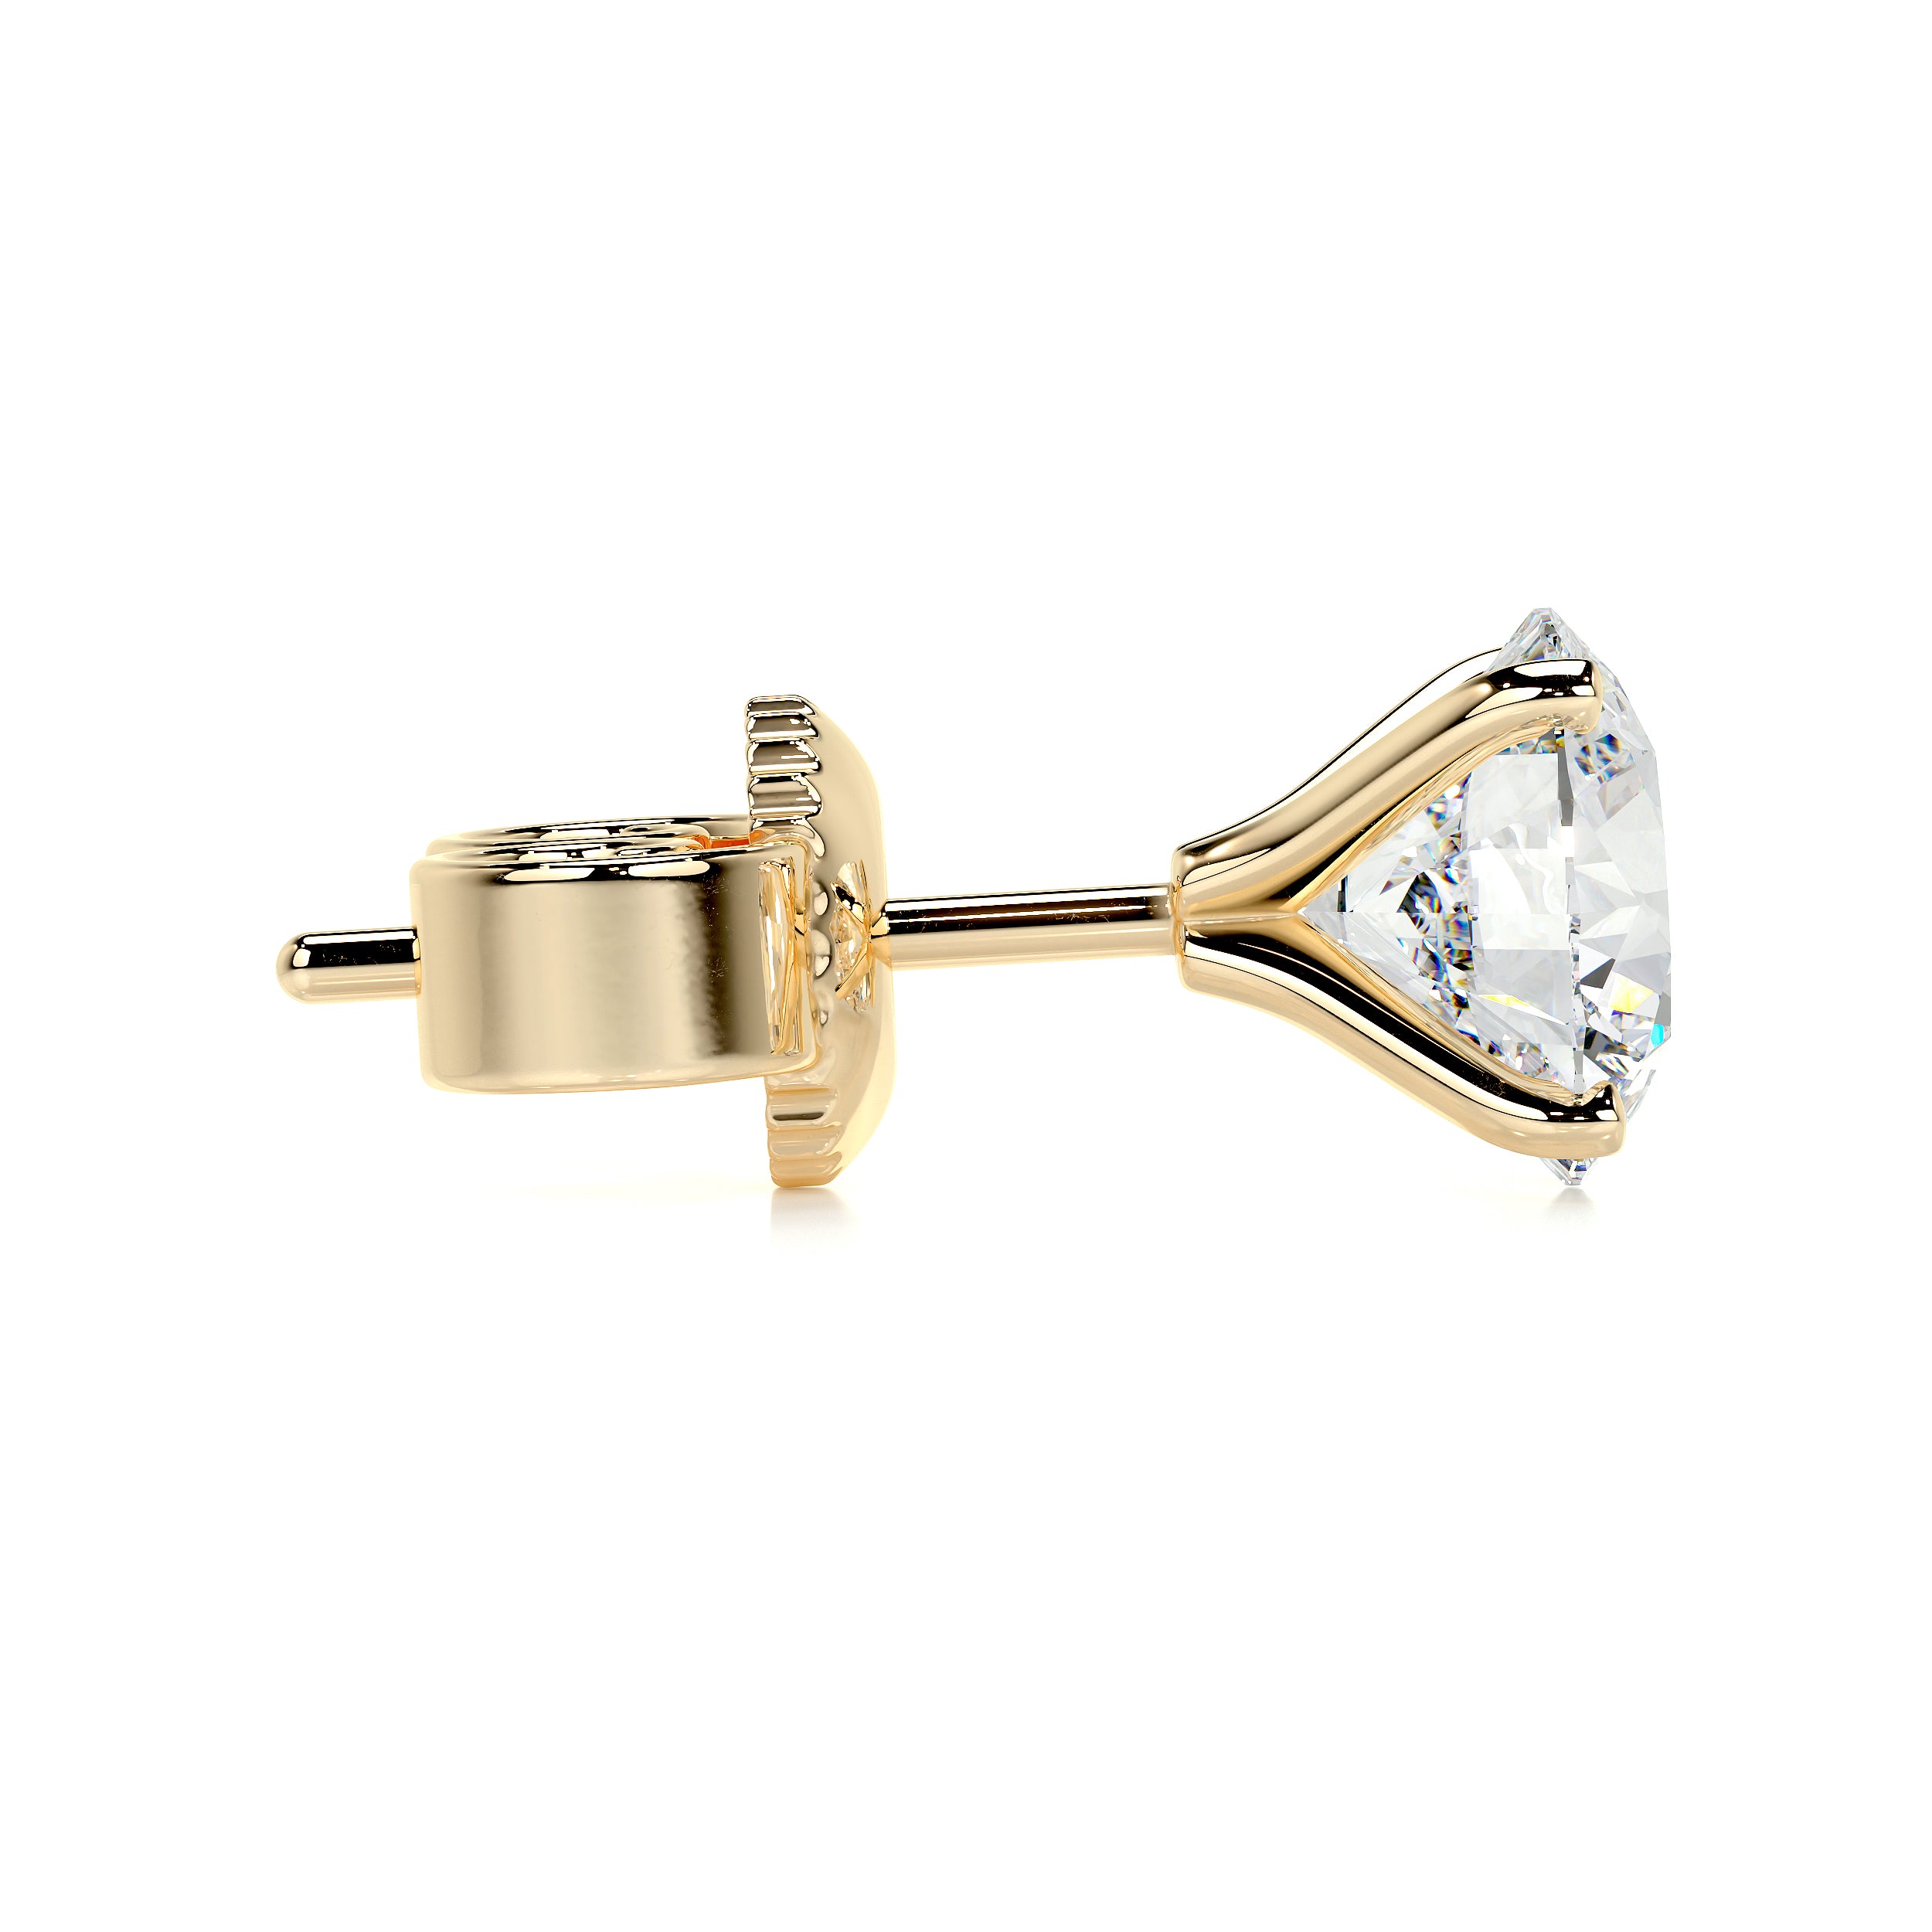 Allen Lab Grown Diamond Earrings   (6 Carat) -18K Yellow Gold